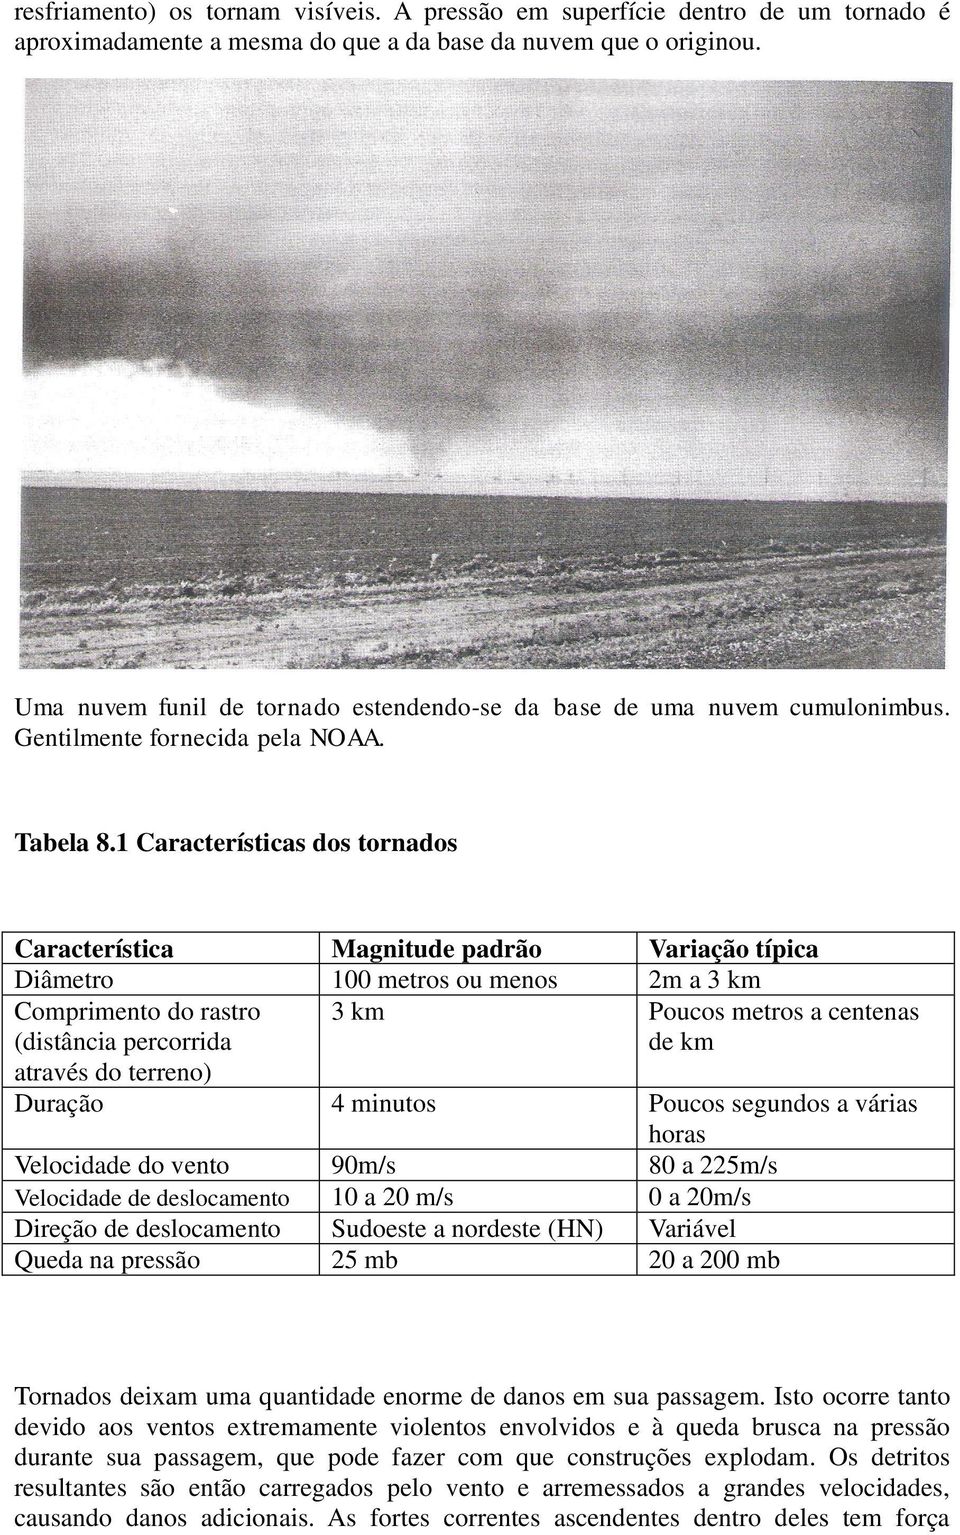 1 Características dos tornados Característica Magnitude padrão Variação típica Diâmetro 100 metros ou menos 2m a 3 km Comprimento do rastro (distância percorrida 3 km Poucos metros a centenas de km